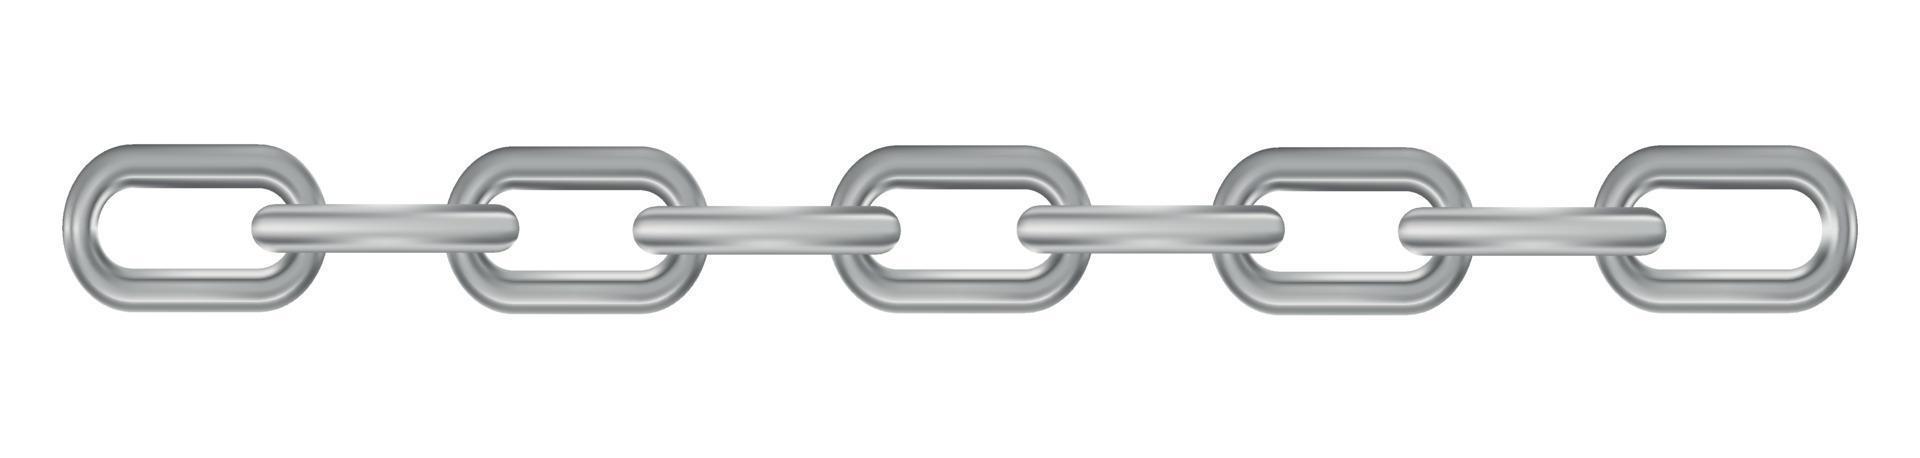 cadena de plata realista de metal sobre fondo panorámico blanco - vector